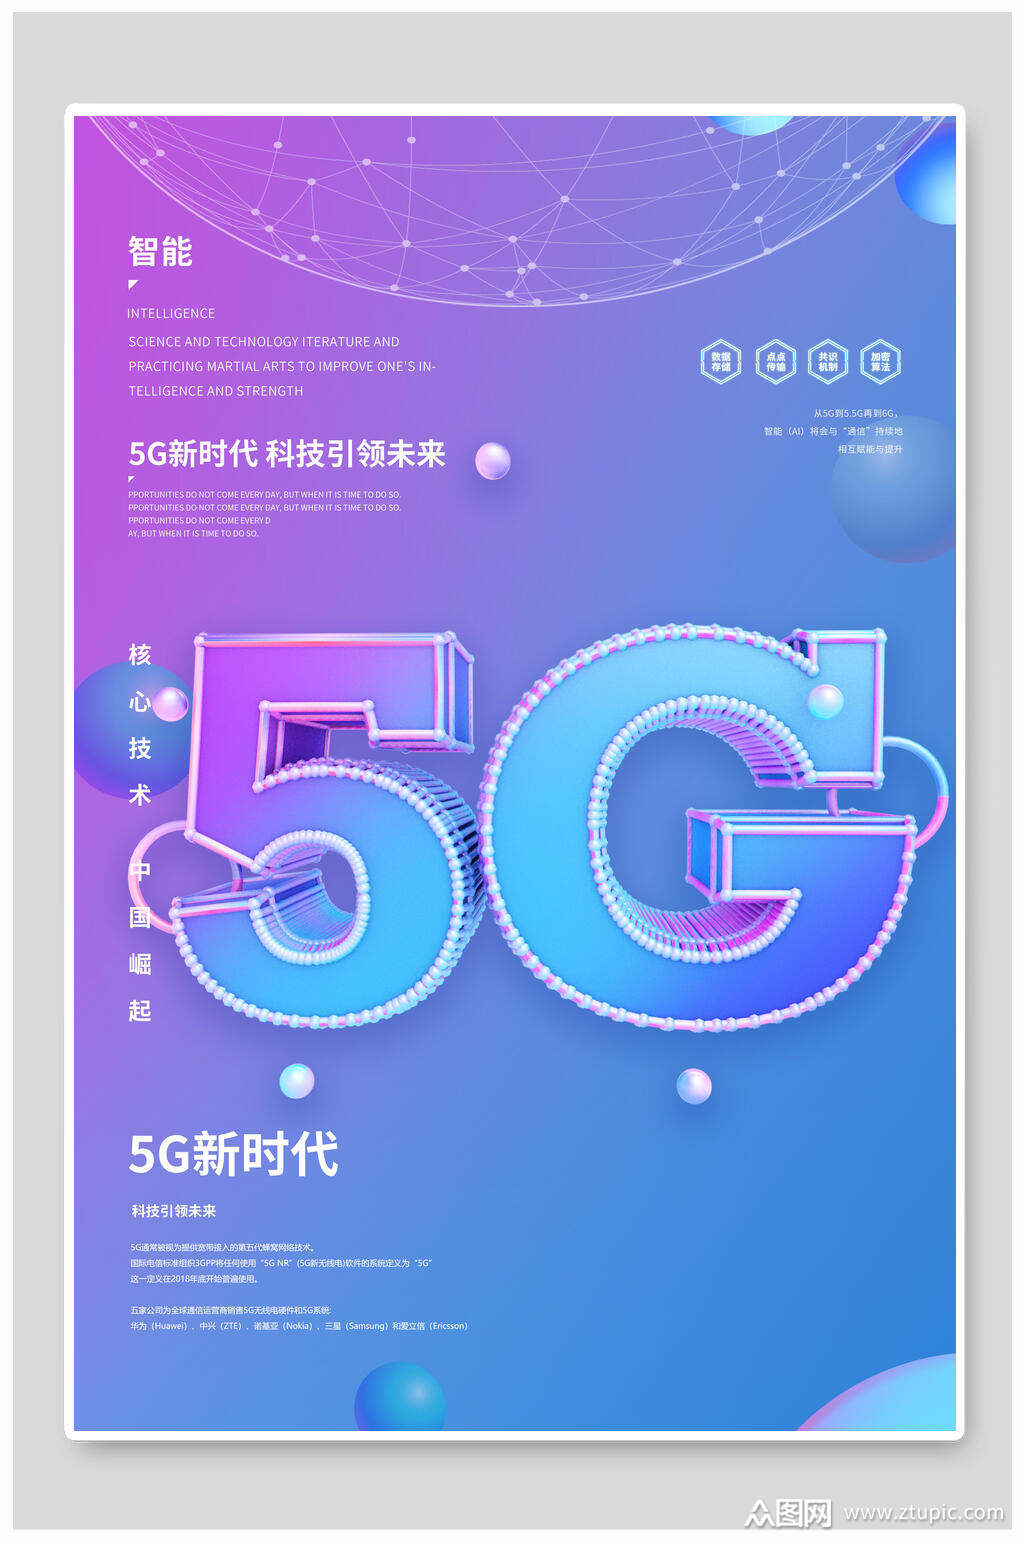 5G 技术降临丽江，手机展览馆融合科技与自然，开启未来智能生活  第2张